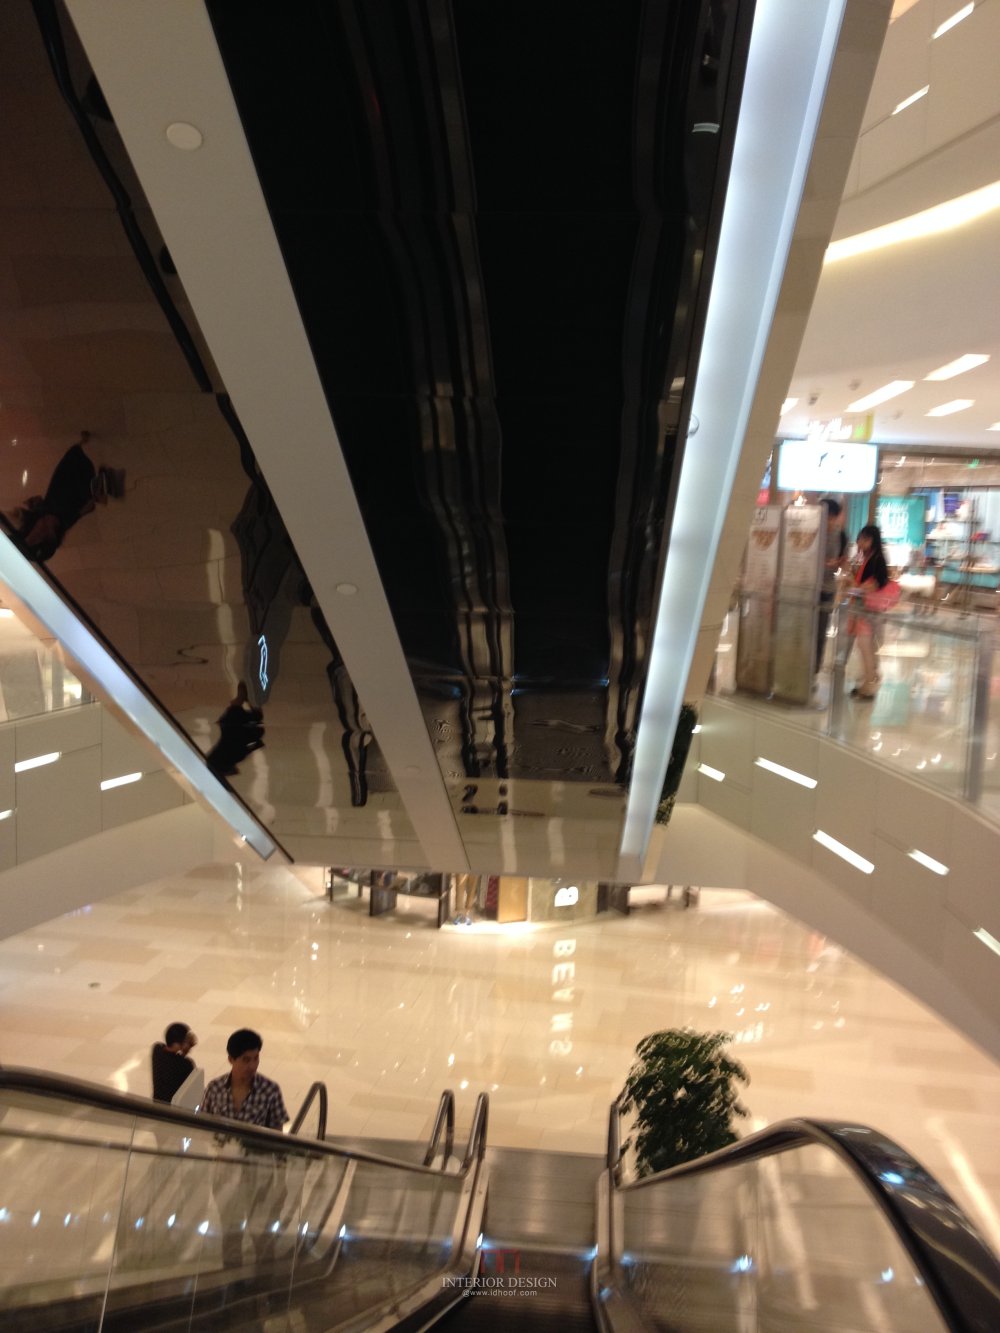 上海环贸Iapm购物商场---内部及细节自拍图_IMG_2611.JPG